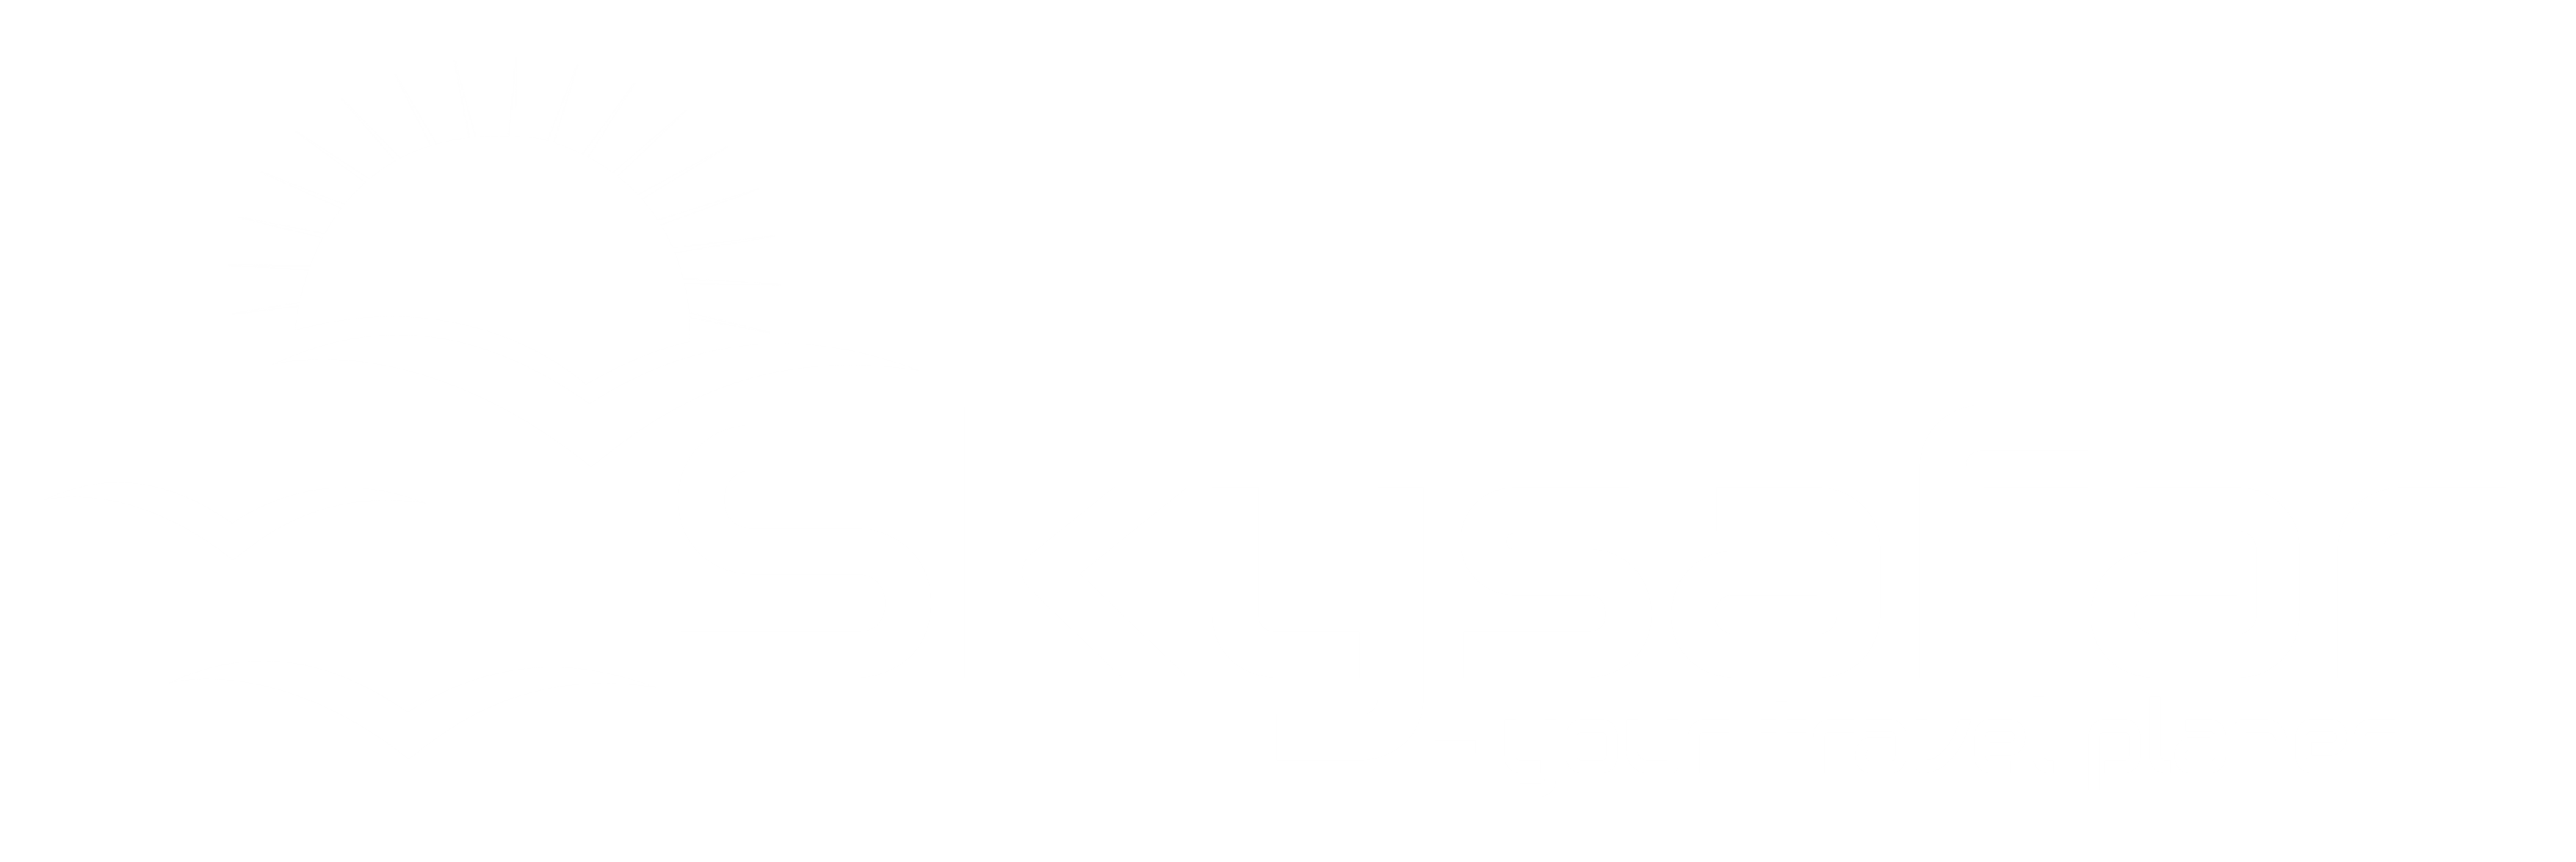 SkySafar